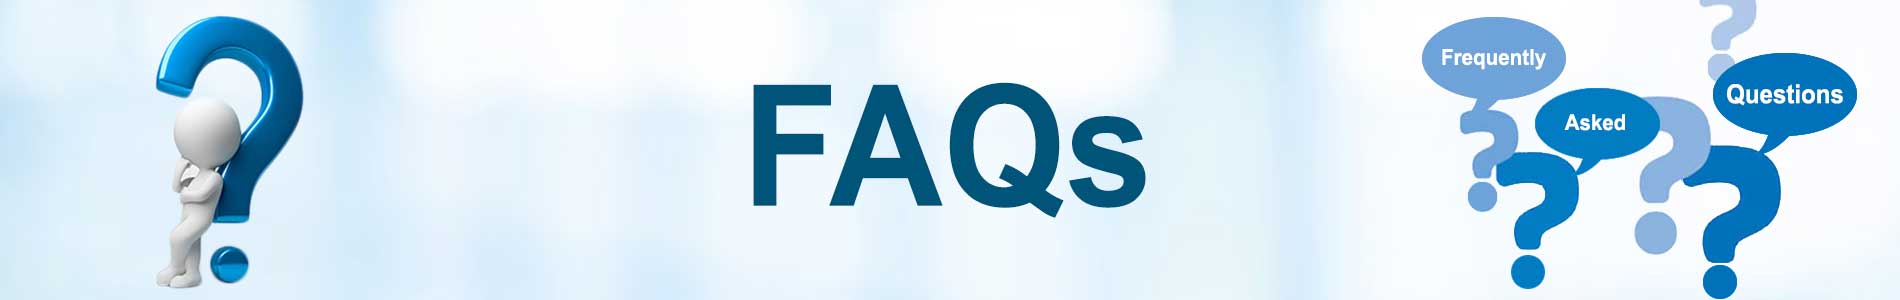 FAQs-insurance-website-banner1